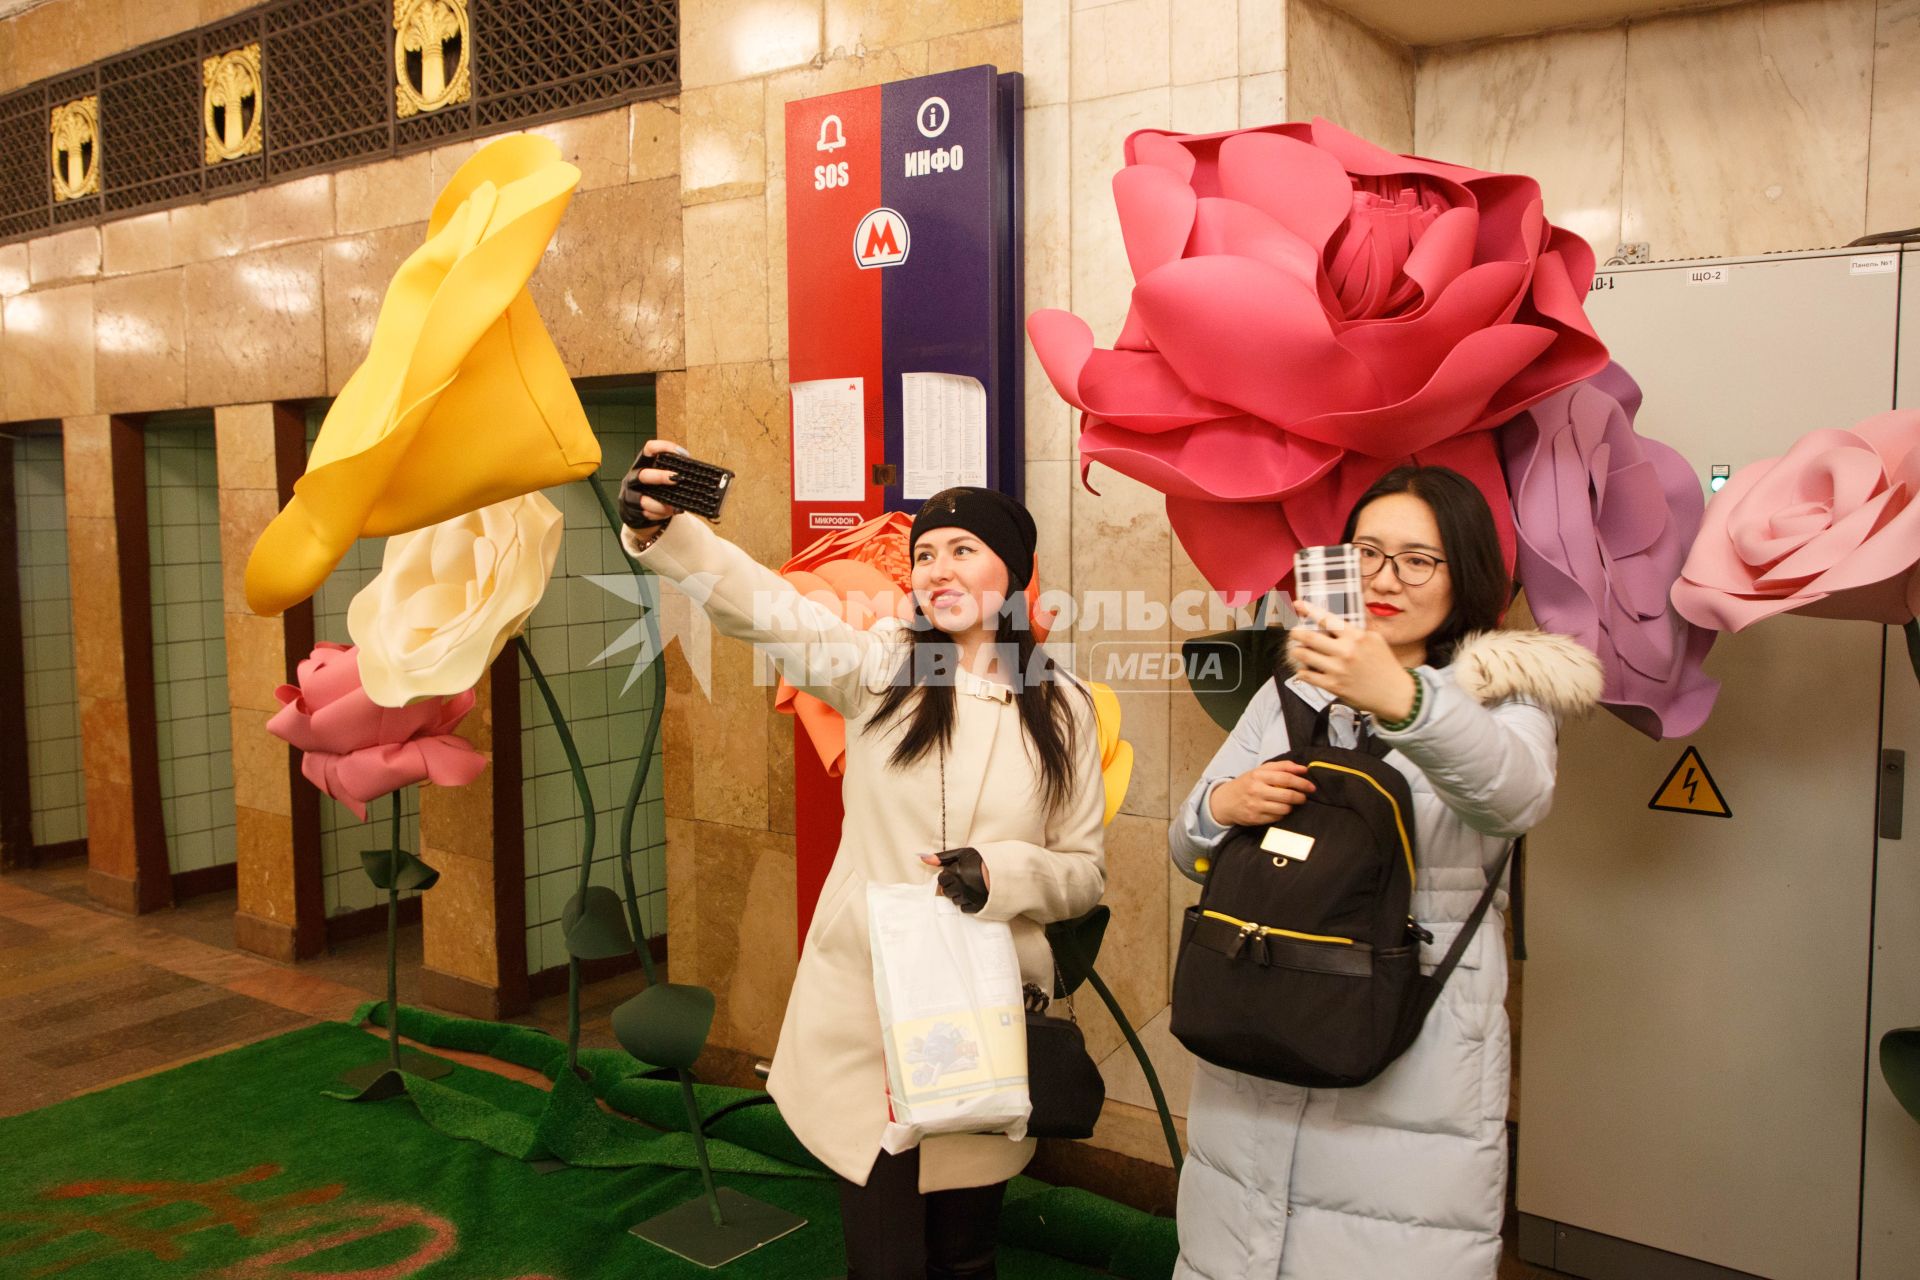 Москва.  Девушки делают селфи на фоне  цветочных композиций, которые появились в метро в канун праздника 8 Марта.